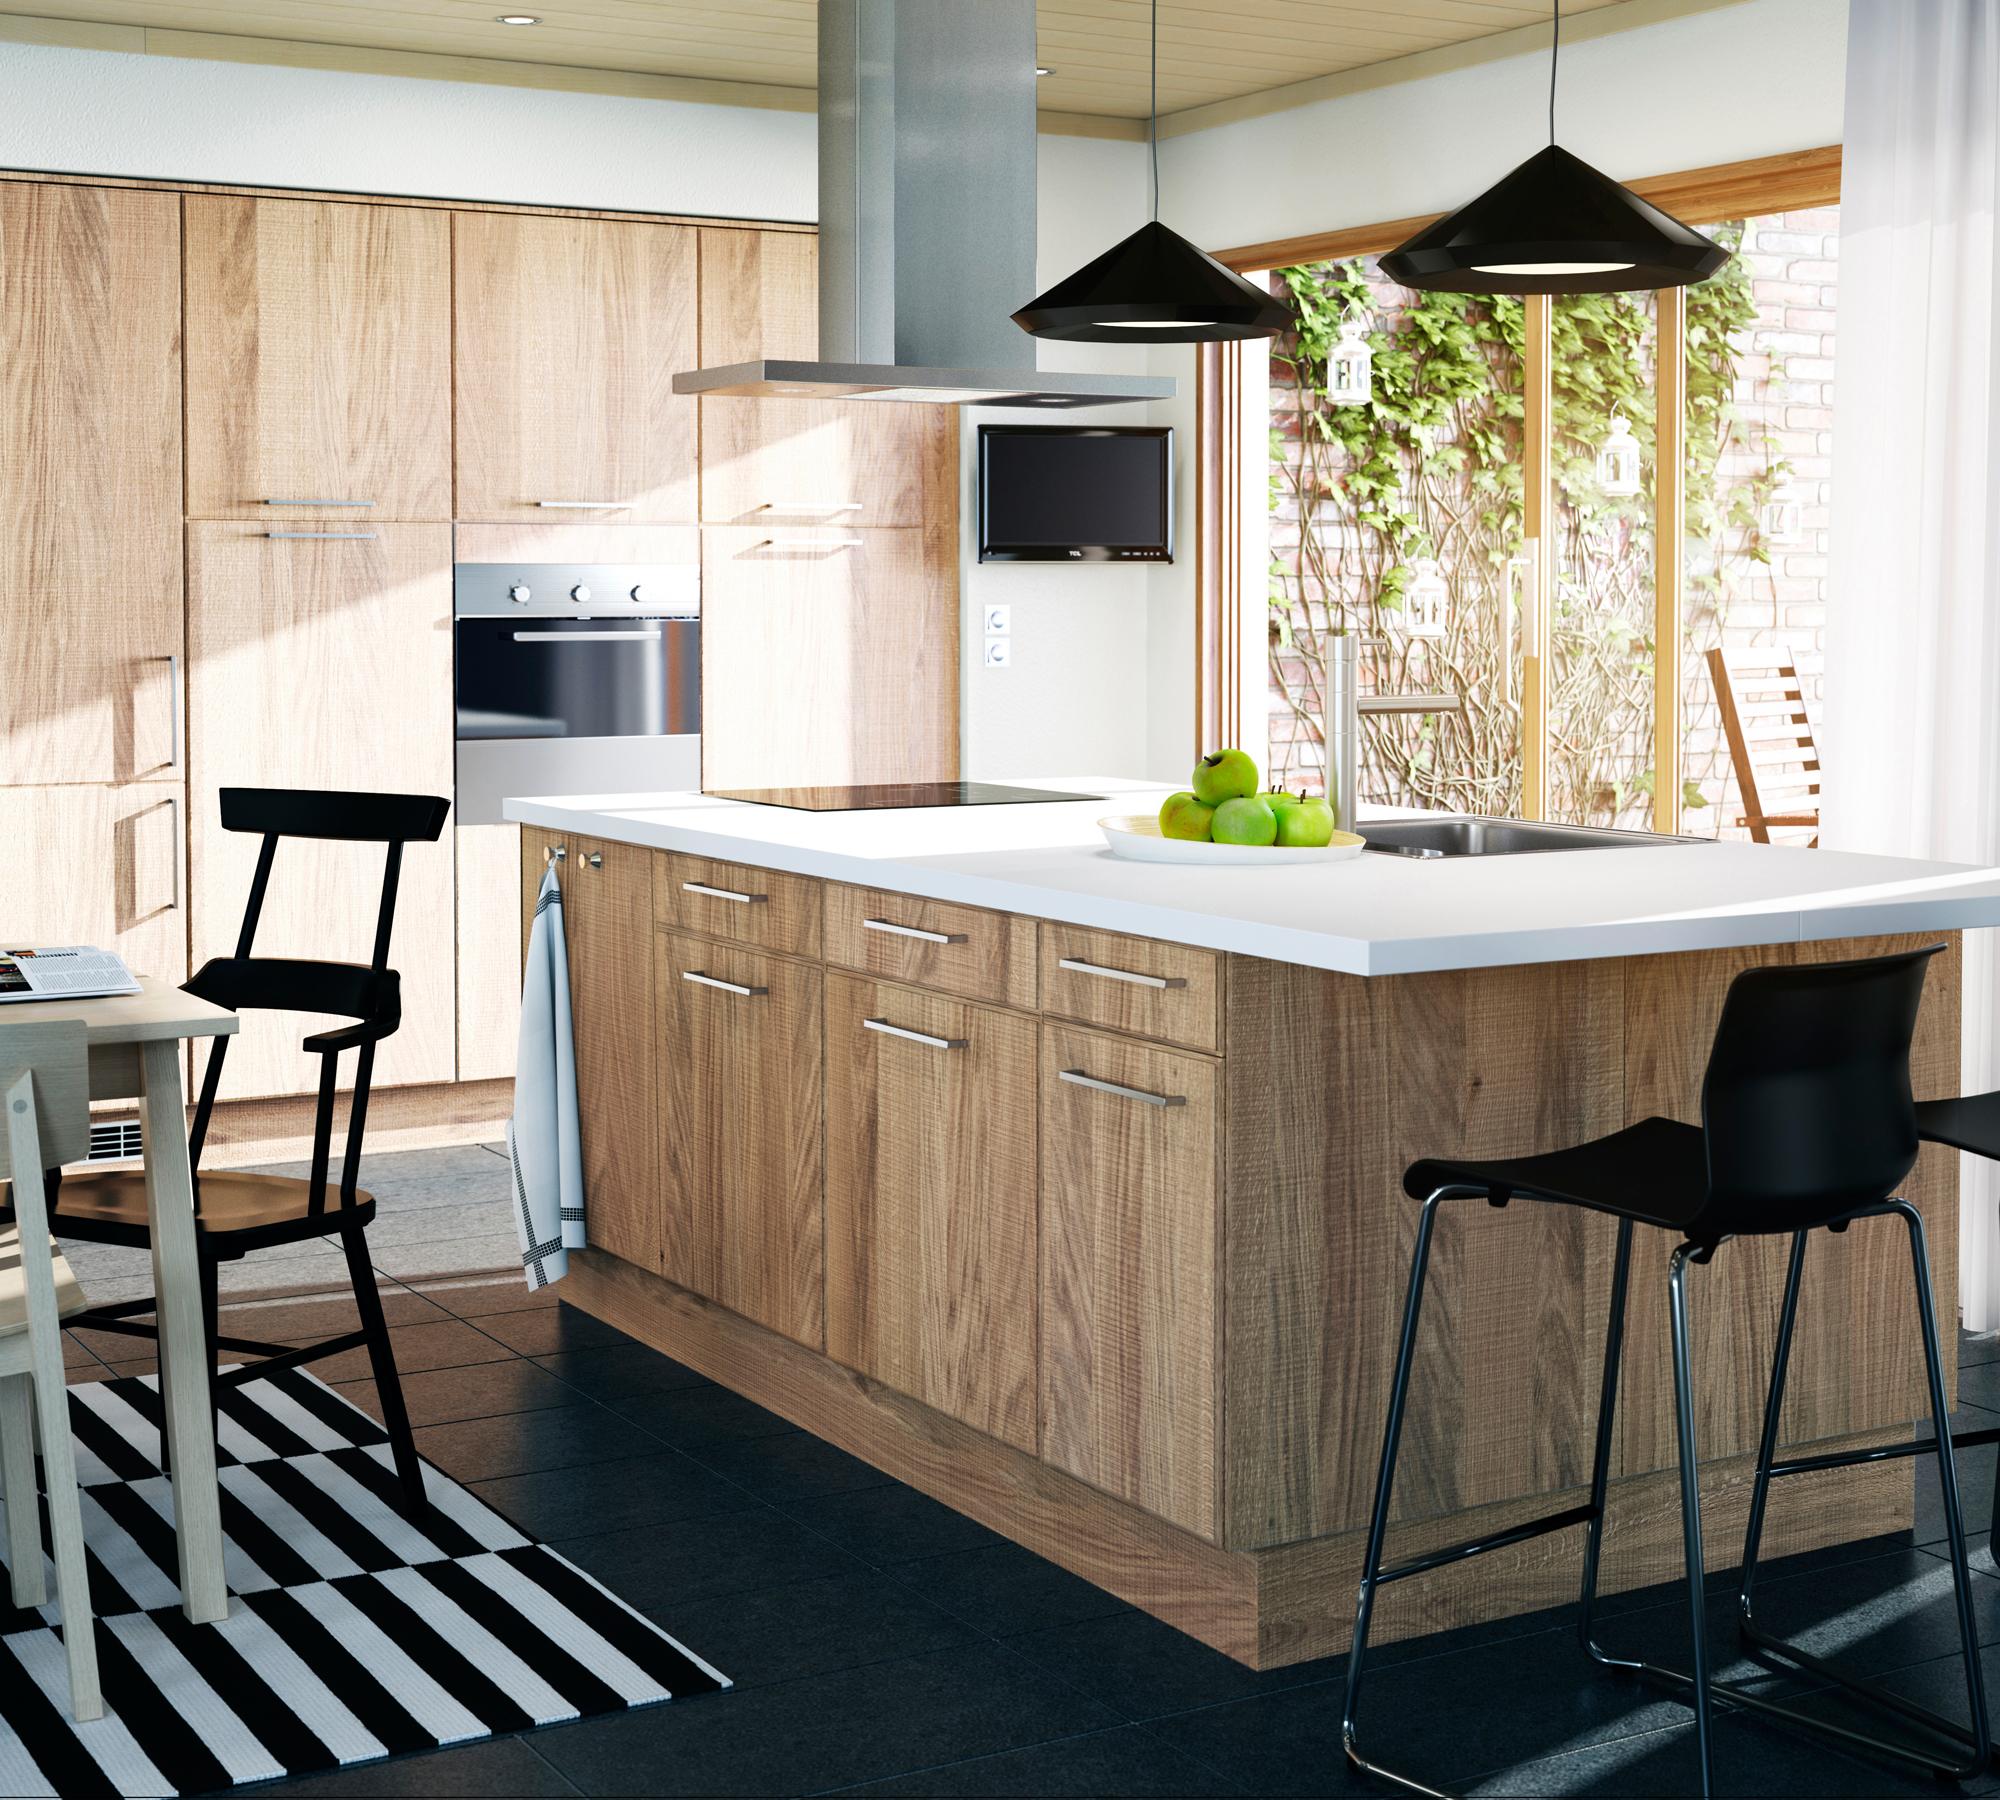 Küchenblock und Einbauschränke aus Holz in moderner Küche #ikea #kücheninsel #schwarzehängeleuchte ©Inter IKEA Systems B.V